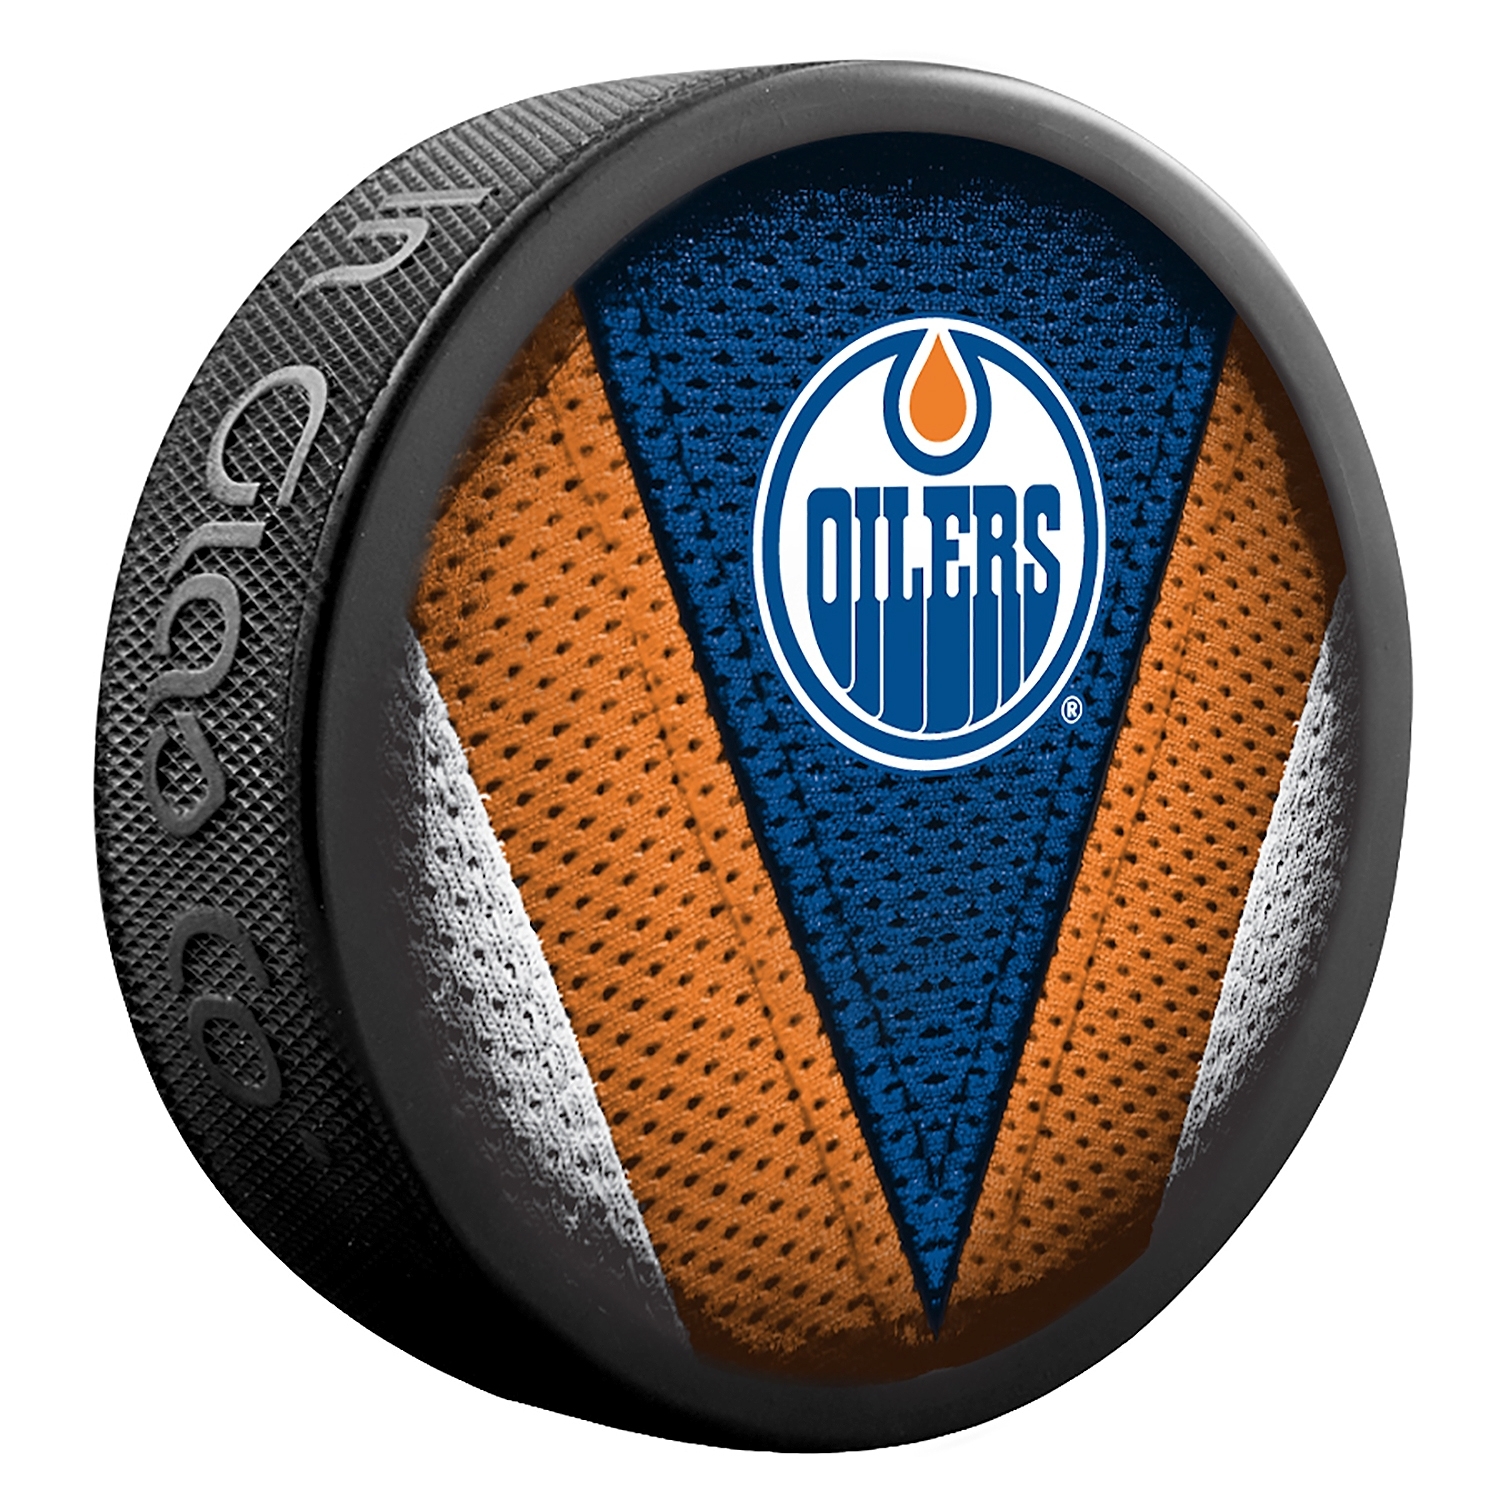 Fanouškovský puk NHL Stitch Blister (1ks), Edmonton Oilers